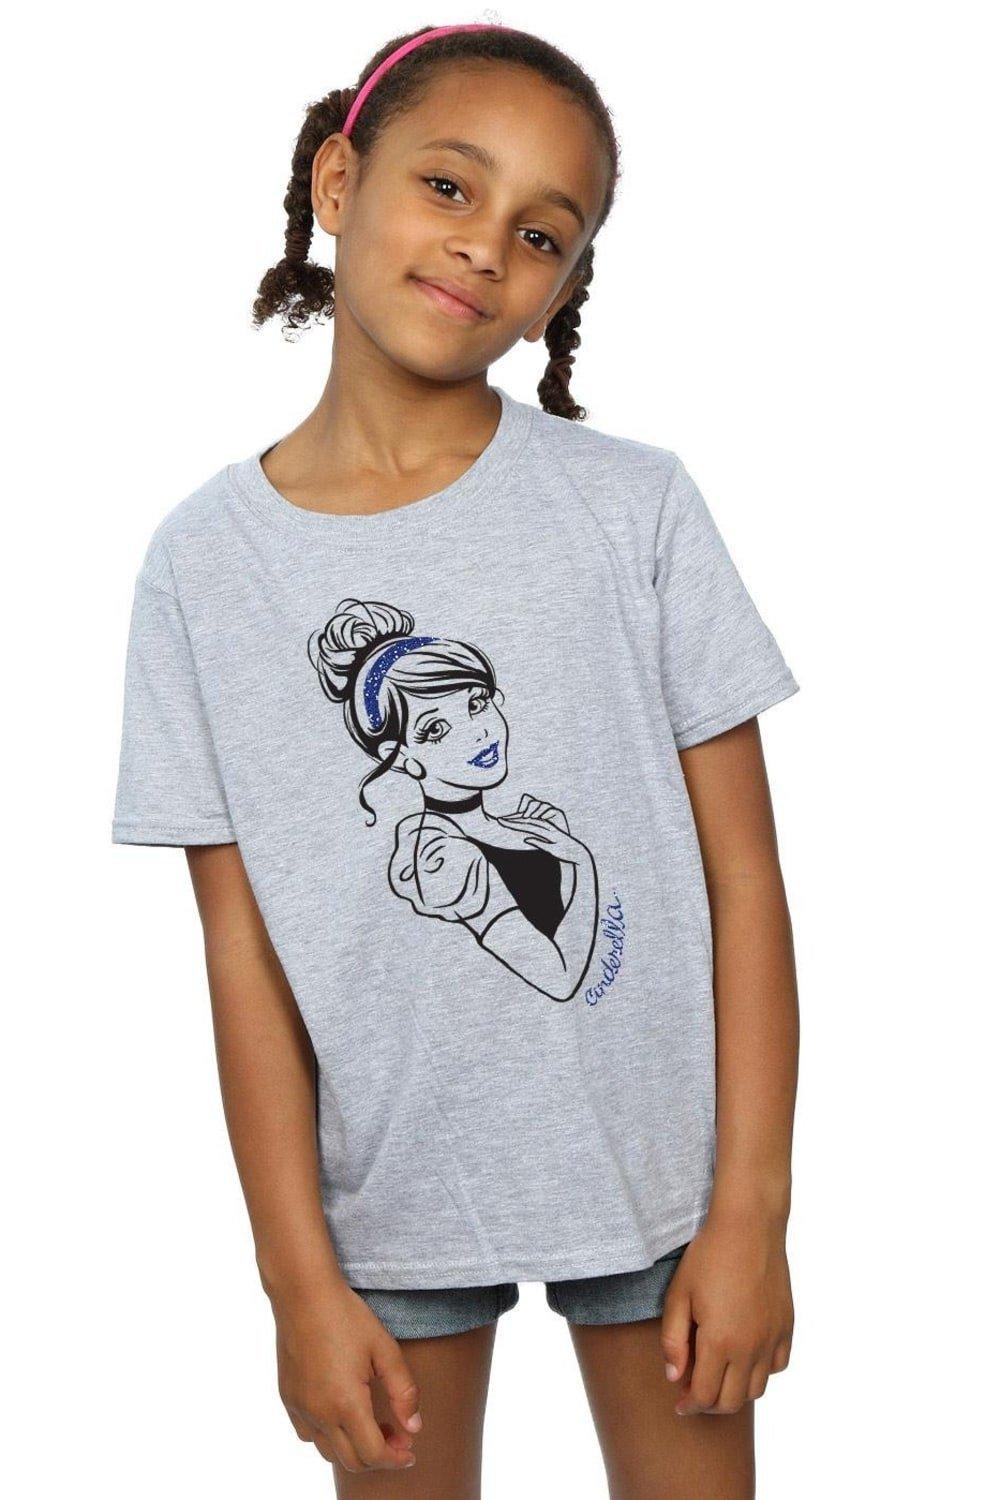 Хлопковая футболка с блестками «Золушка» Disney Princess, серый